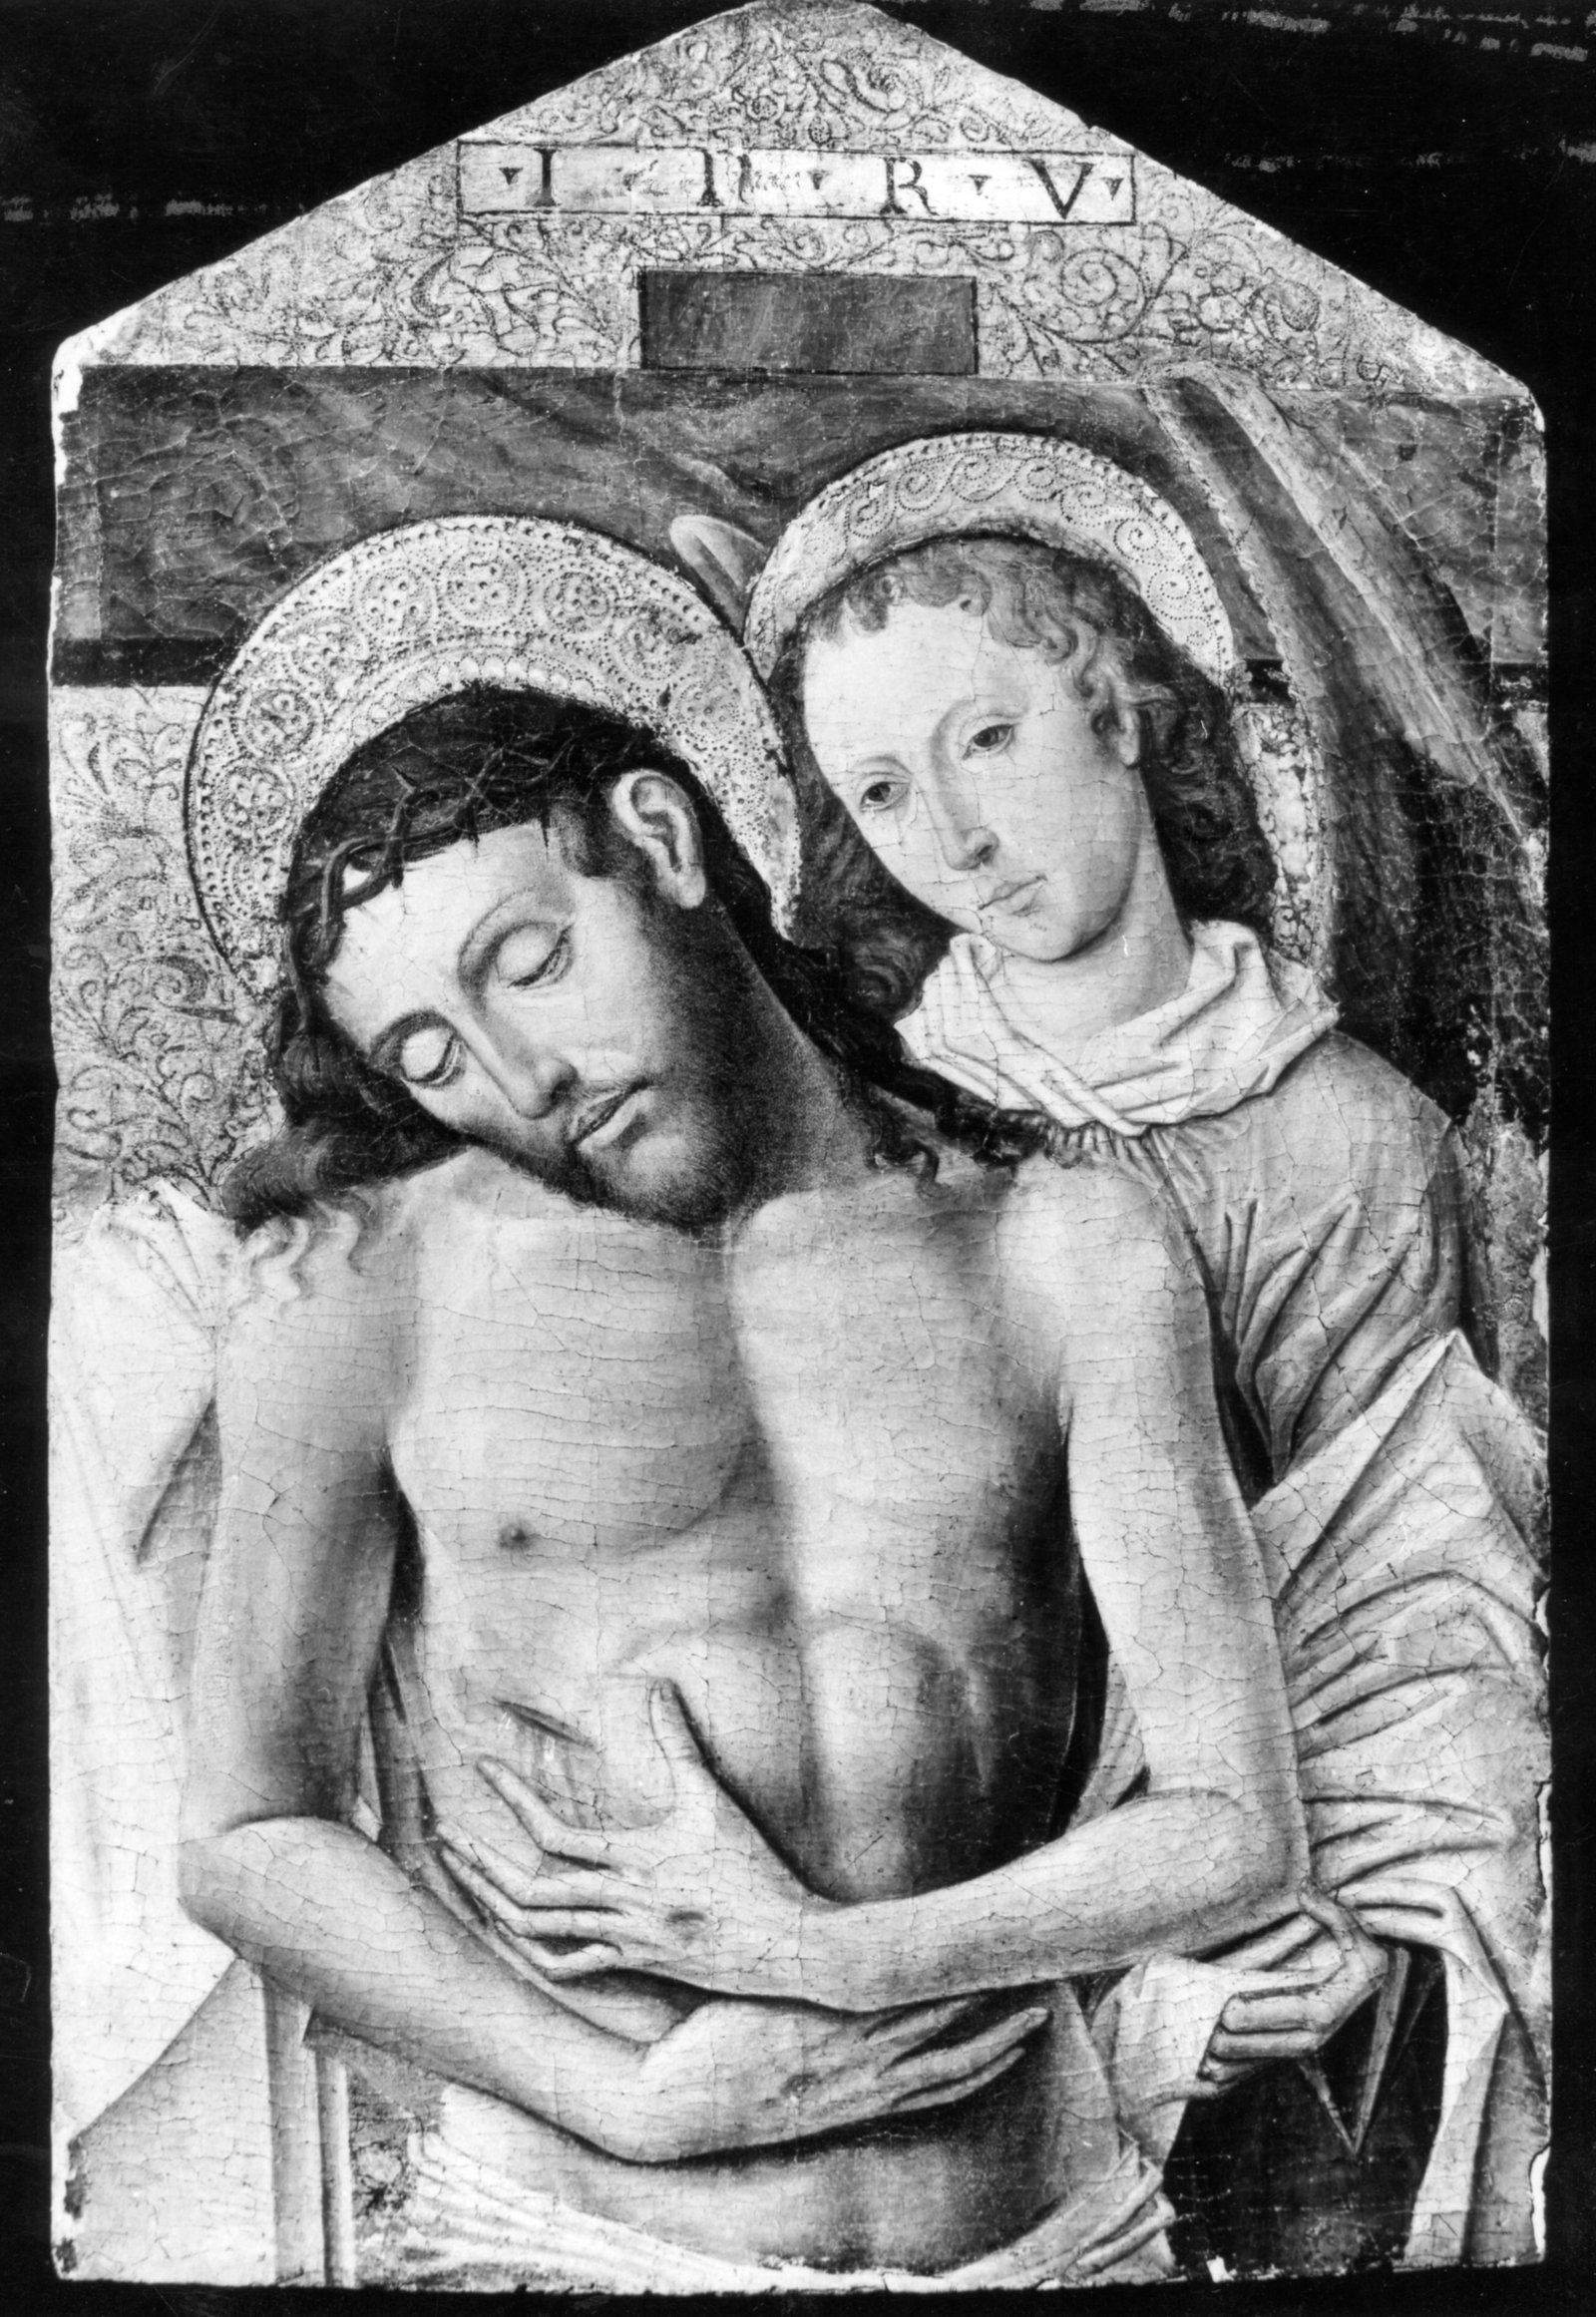 Mestro della Madonna Cagnola (Zanetto Bugatto): Cristo morto sorretto da un angelo. Ubicazione ignota